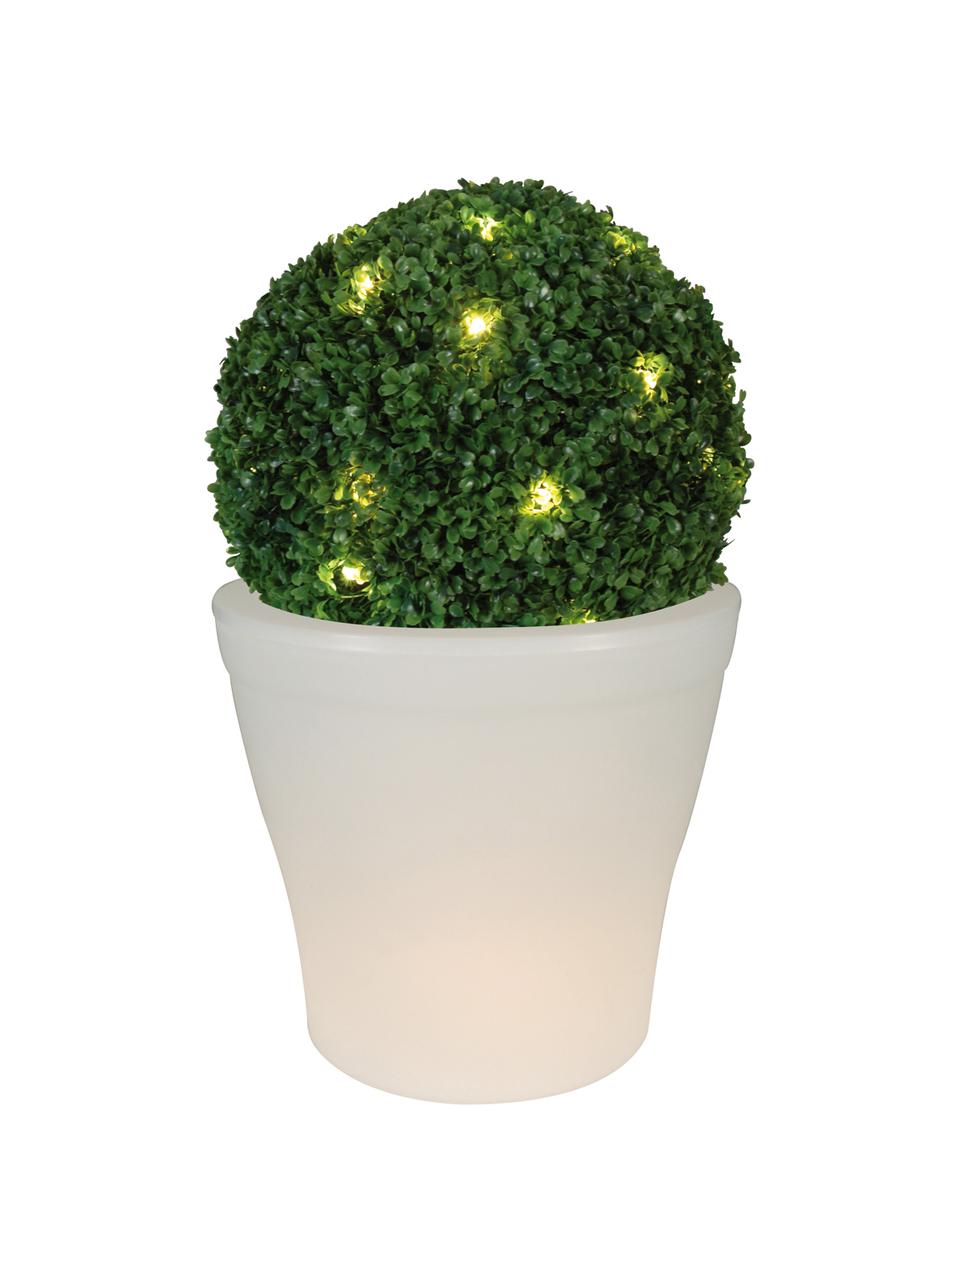 Mobile LED Außenleuchte Flowerpot, Kunststoff, Weiß, Ø 39 x H 37 cm